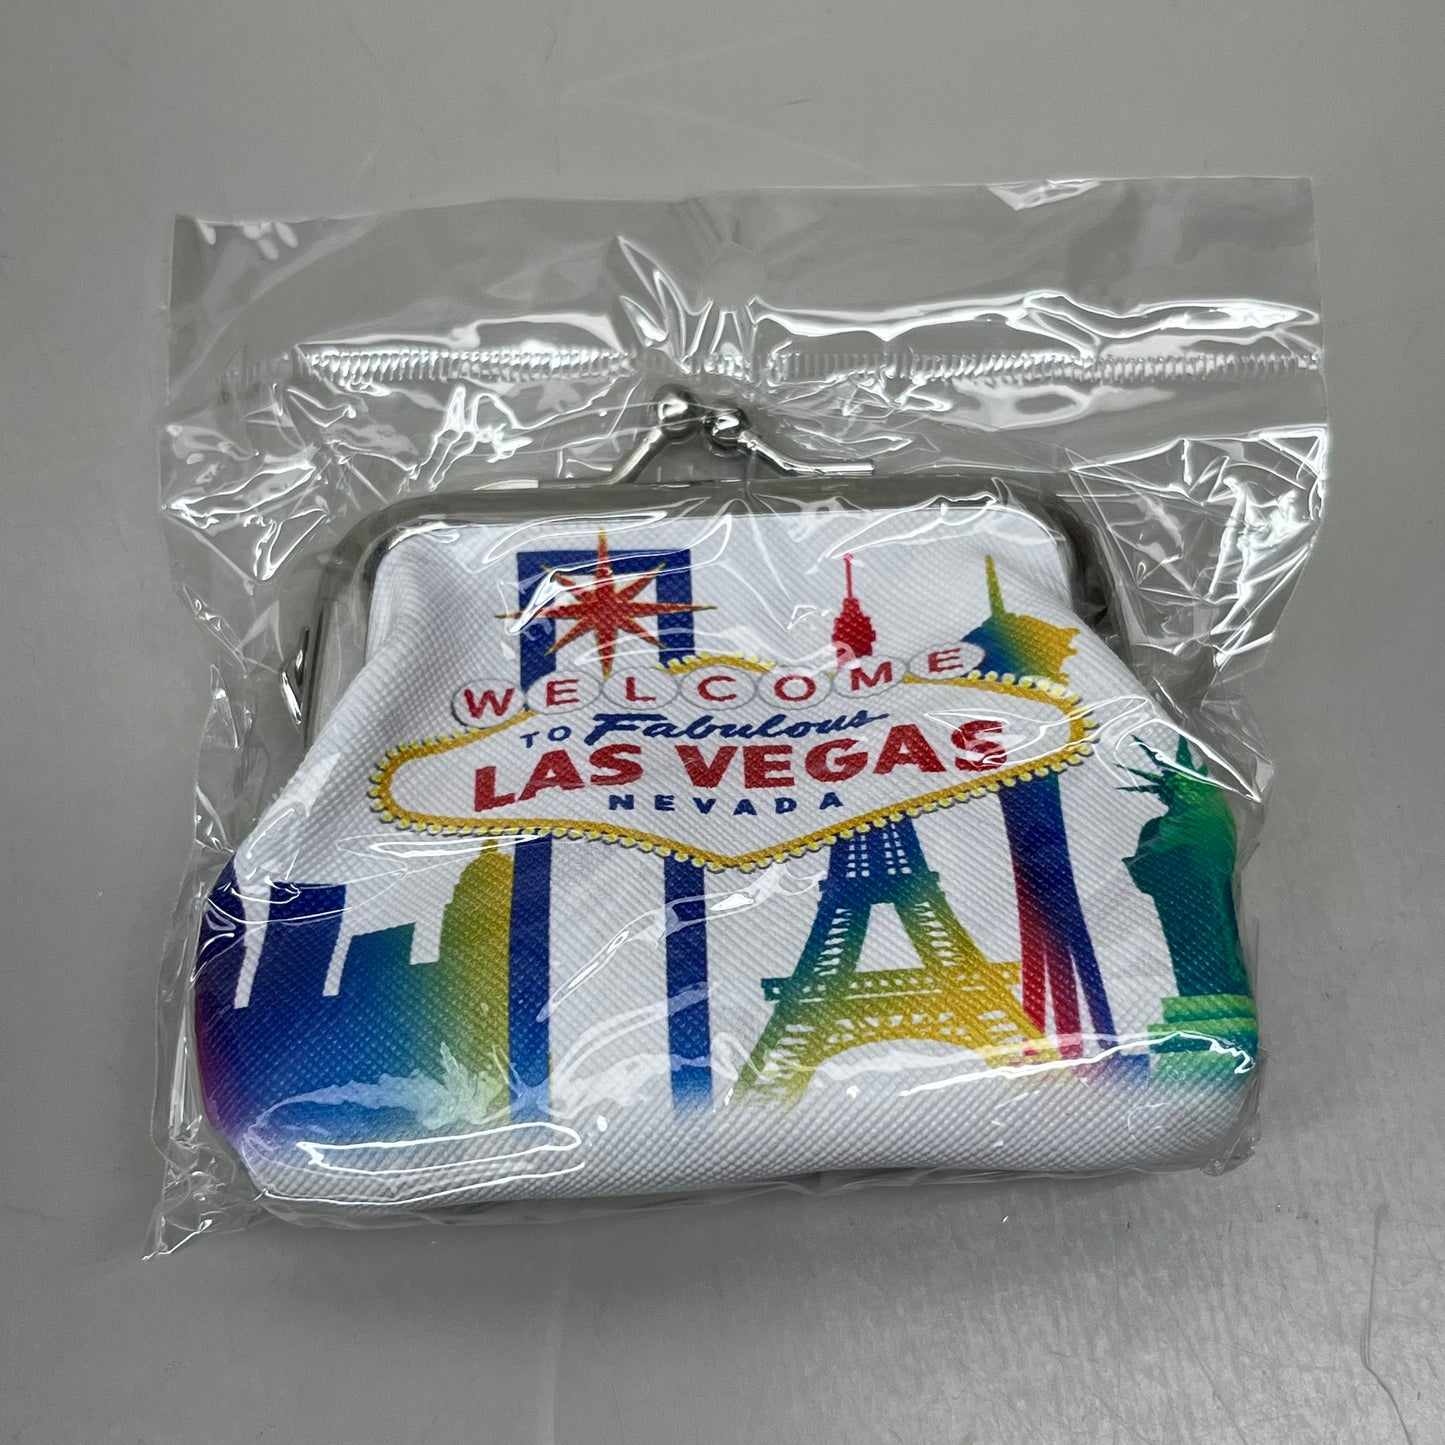 LAS VEGAS 3-PACK! Welcome to Fabulous Las Vegas Coin Purse Souvenirs 4" x 4" City